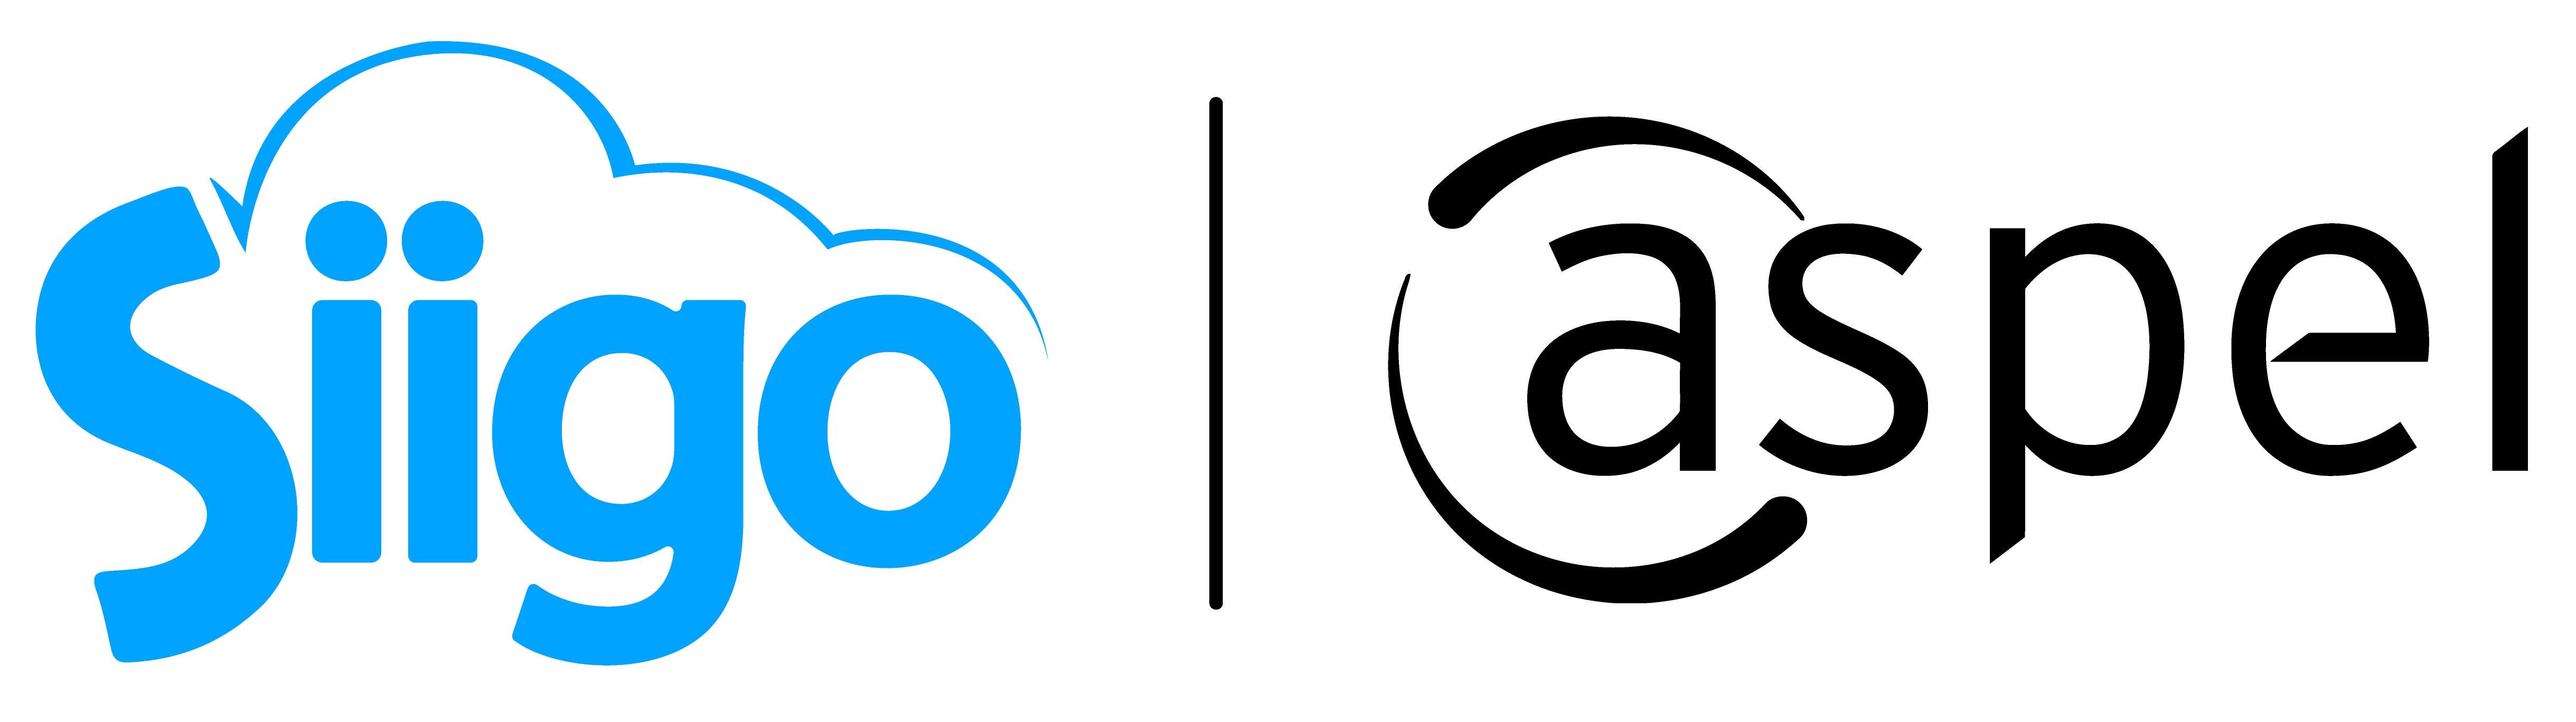 logotipo Siigo aspel